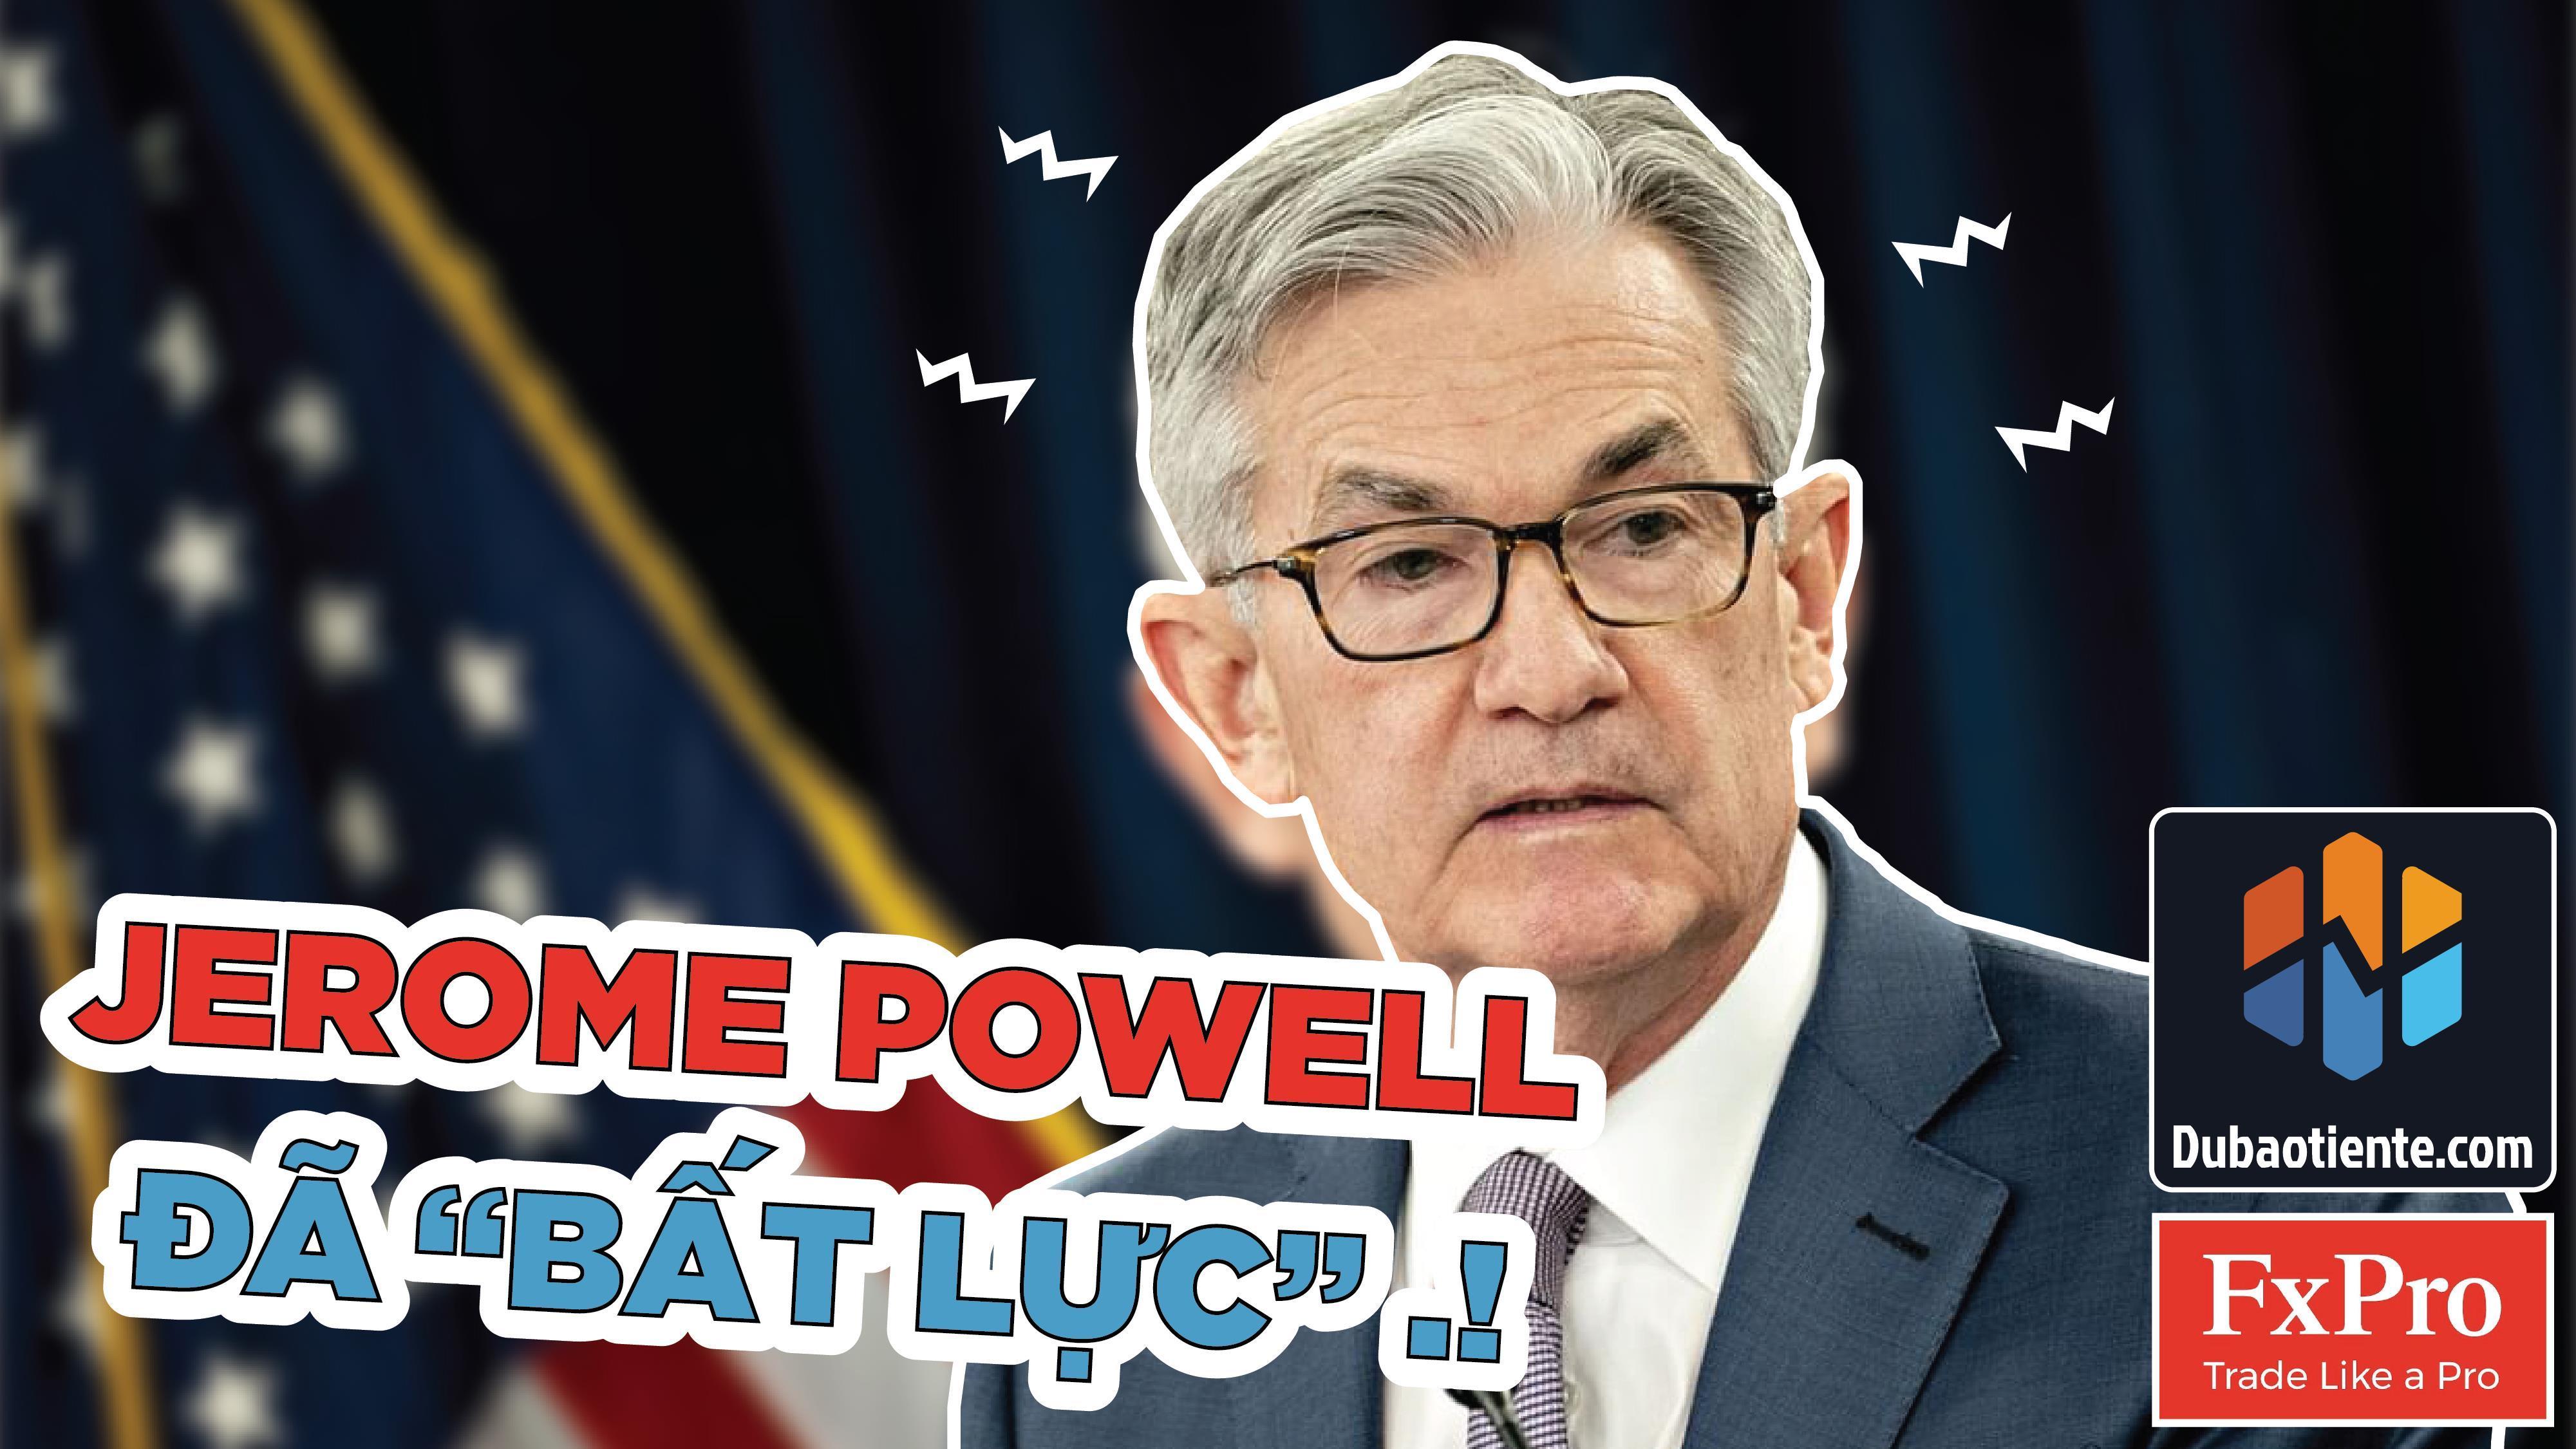 [BẢN TIN DỰ BÁO TIỀN TỆ] Powell Không Thể Kìm Hãm Đà Bán Tháo Trái Phiếu, USD Và Vàng Biến Động Mạnh